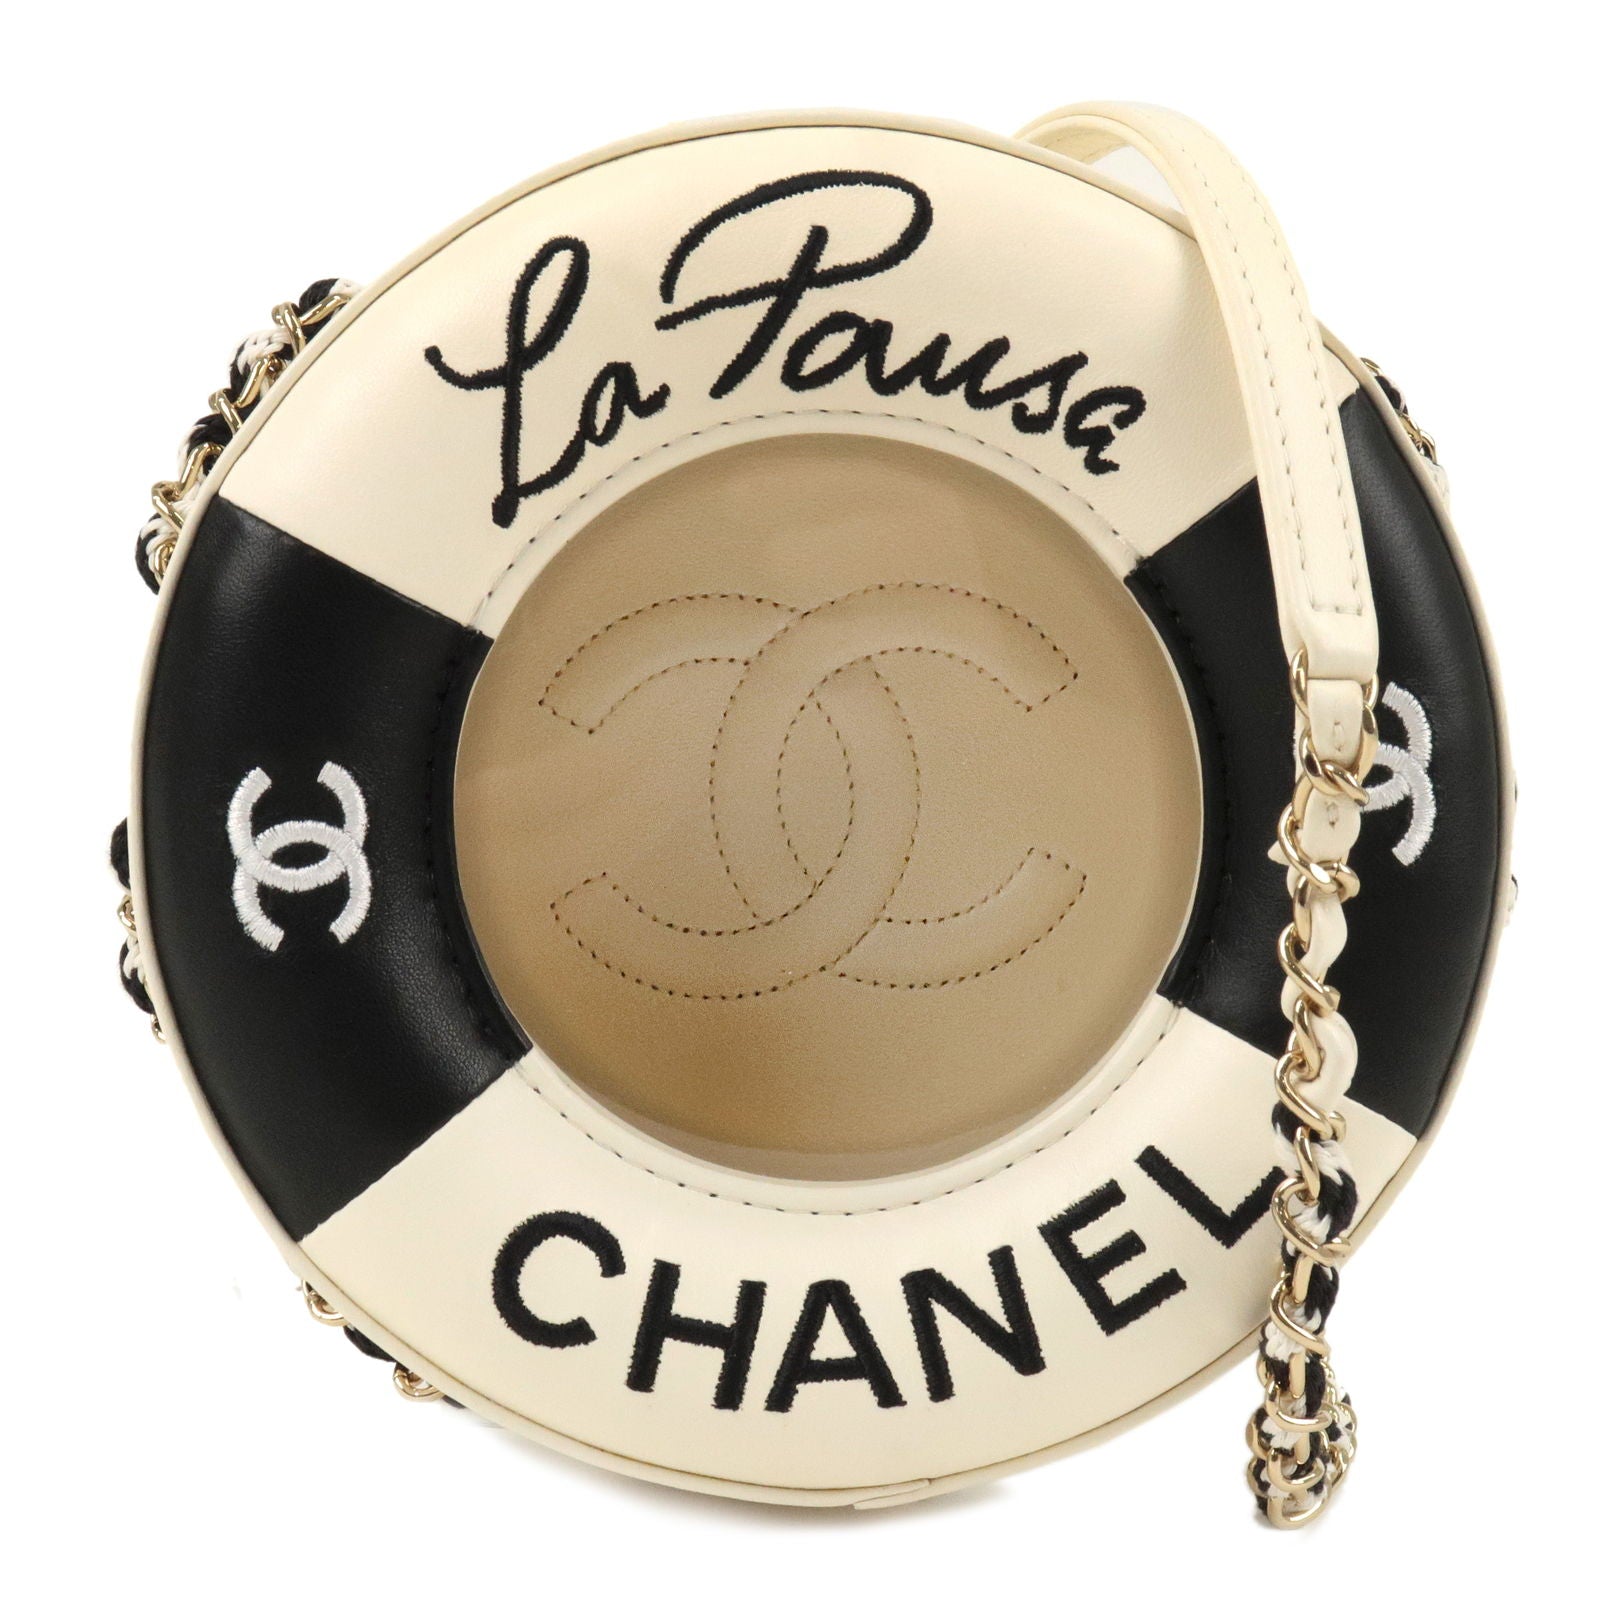 Chanel Pre-owned Cruise La Pausa Tote